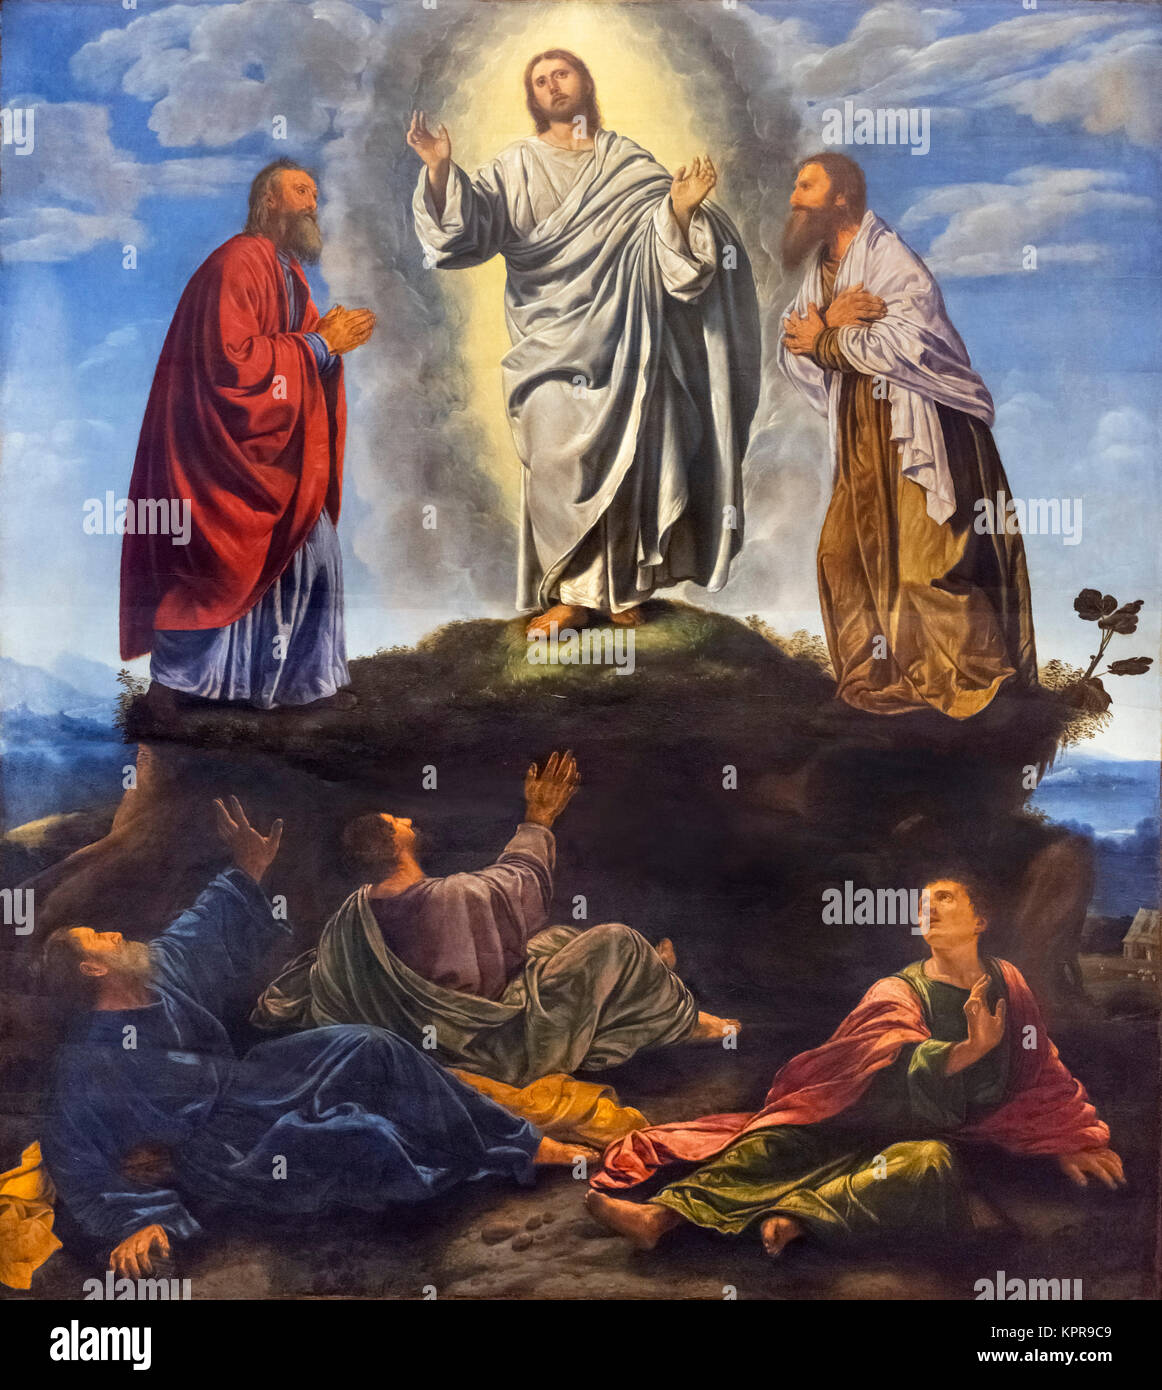 La Transfiguration par Giovanni Girolamo Savoldo (c.1480 - c.1548), huile sur panneau, c.1530-35. La peinture montre la transfiguration de Jésus-Christ avec les prophètes Moïse et Élie à ses côtés et les apôtres Pierre, Jacques et Jean à ses pieds. Banque D'Images